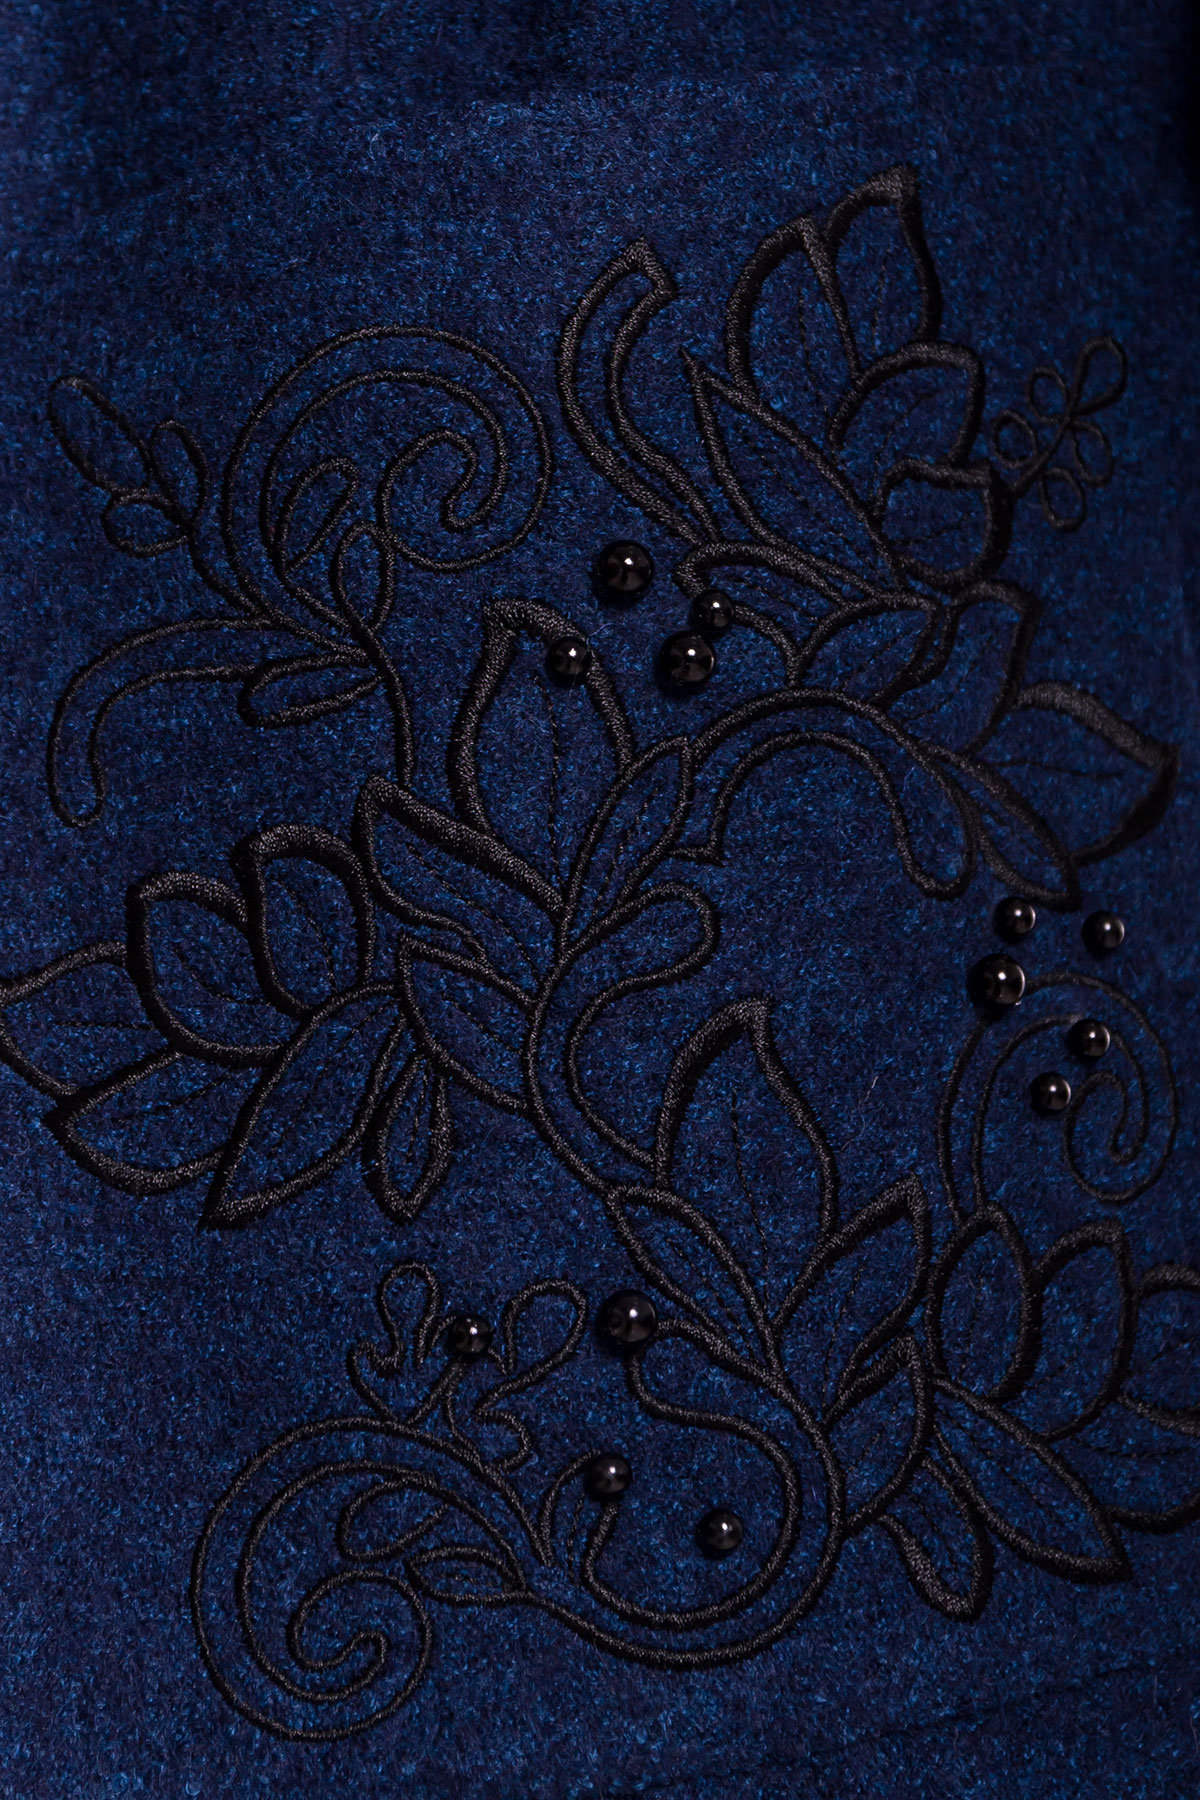 Демисезонное пальто из варенной шерсти Милена 5273 Цвет: Т.синий/электрик-LW27